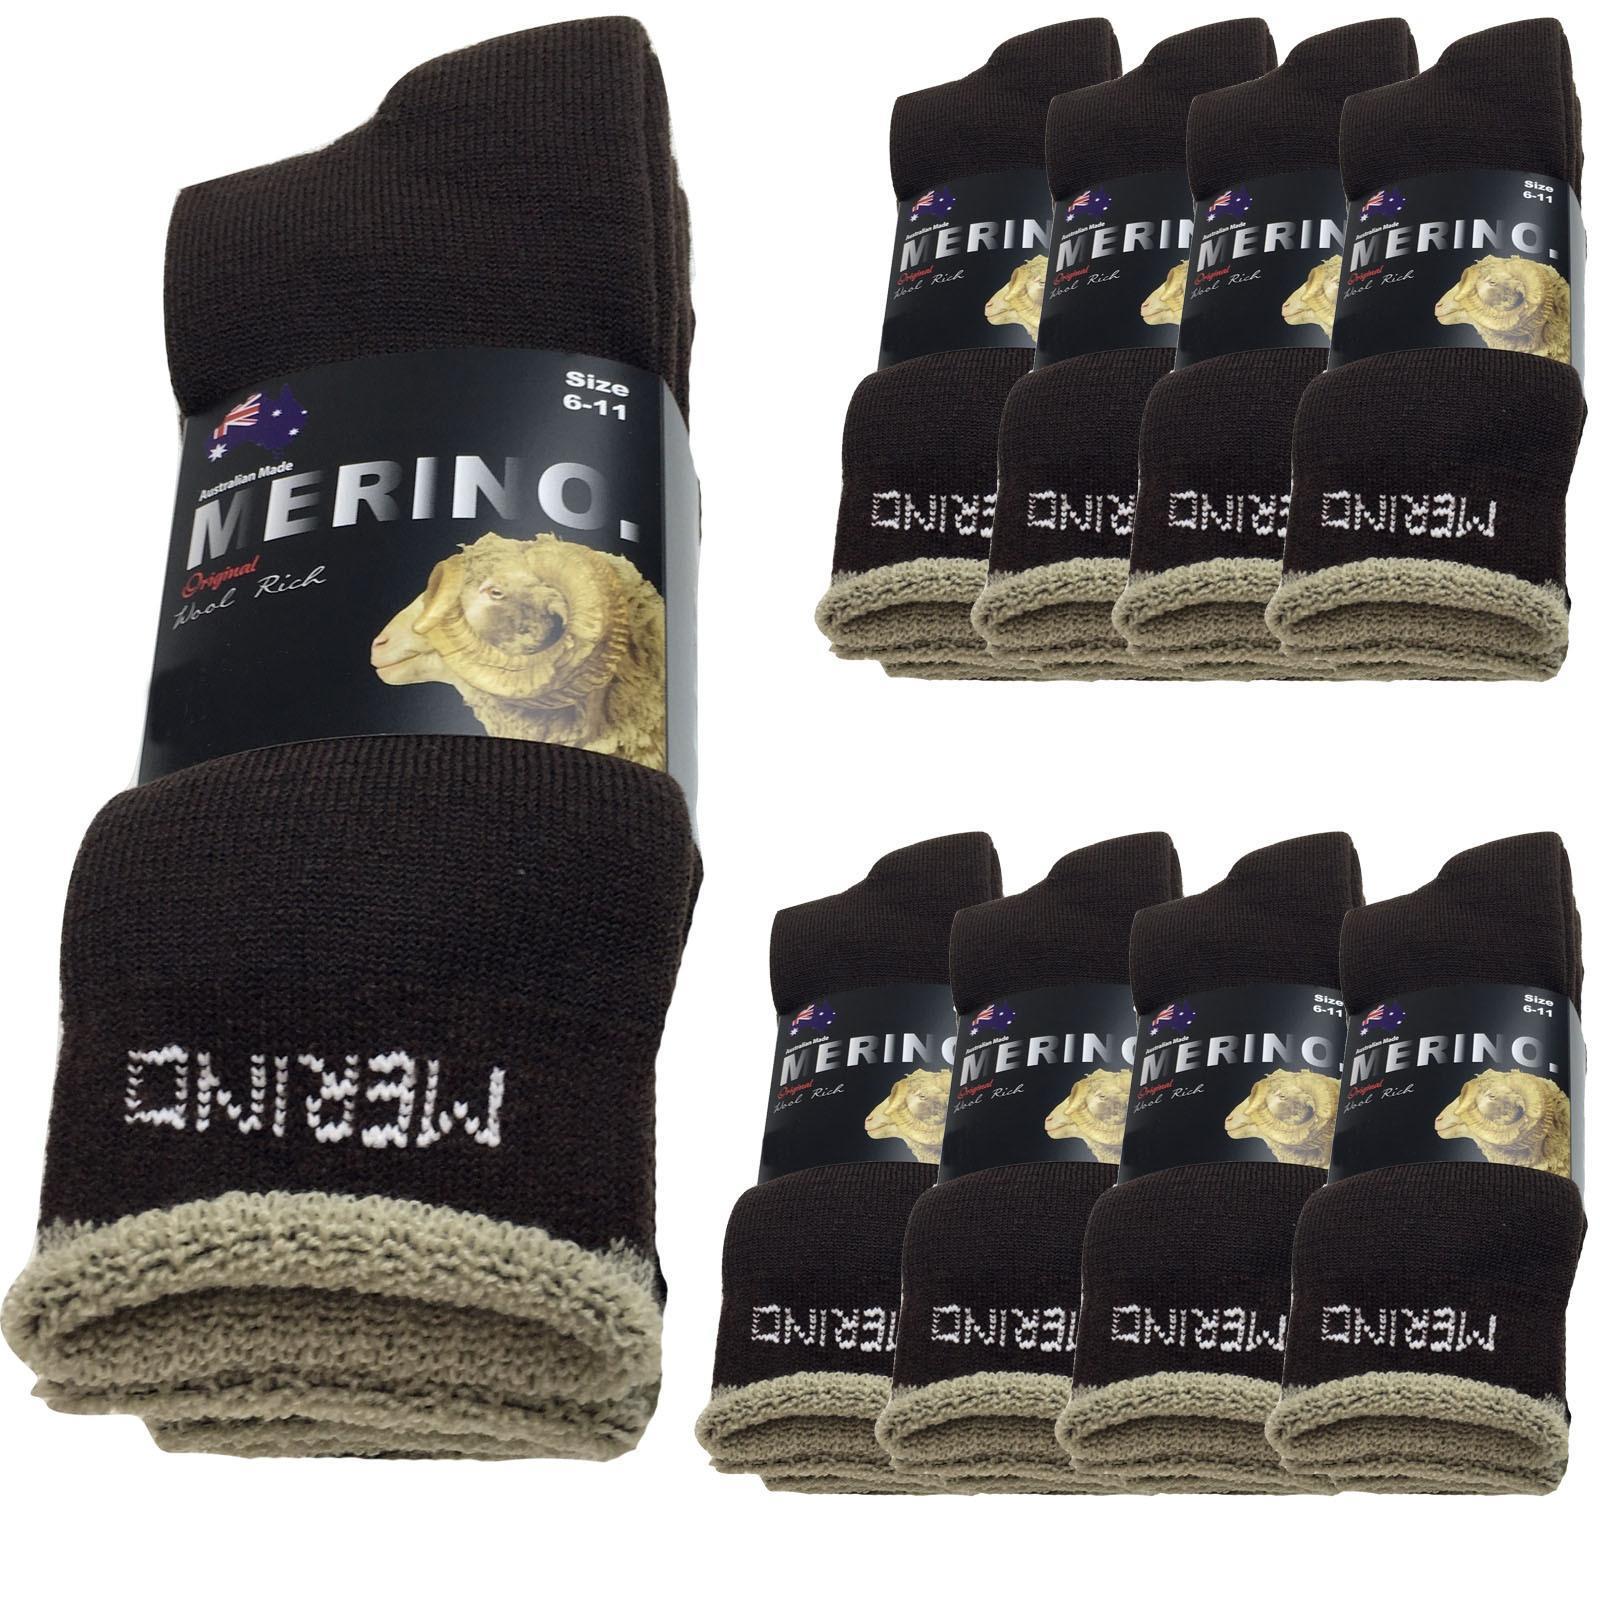 9 Pairs MERINO WOOL SOCKS Mens Heavy Duty Premium Thick Work Socks Cushion BULK - Brown - 6-11